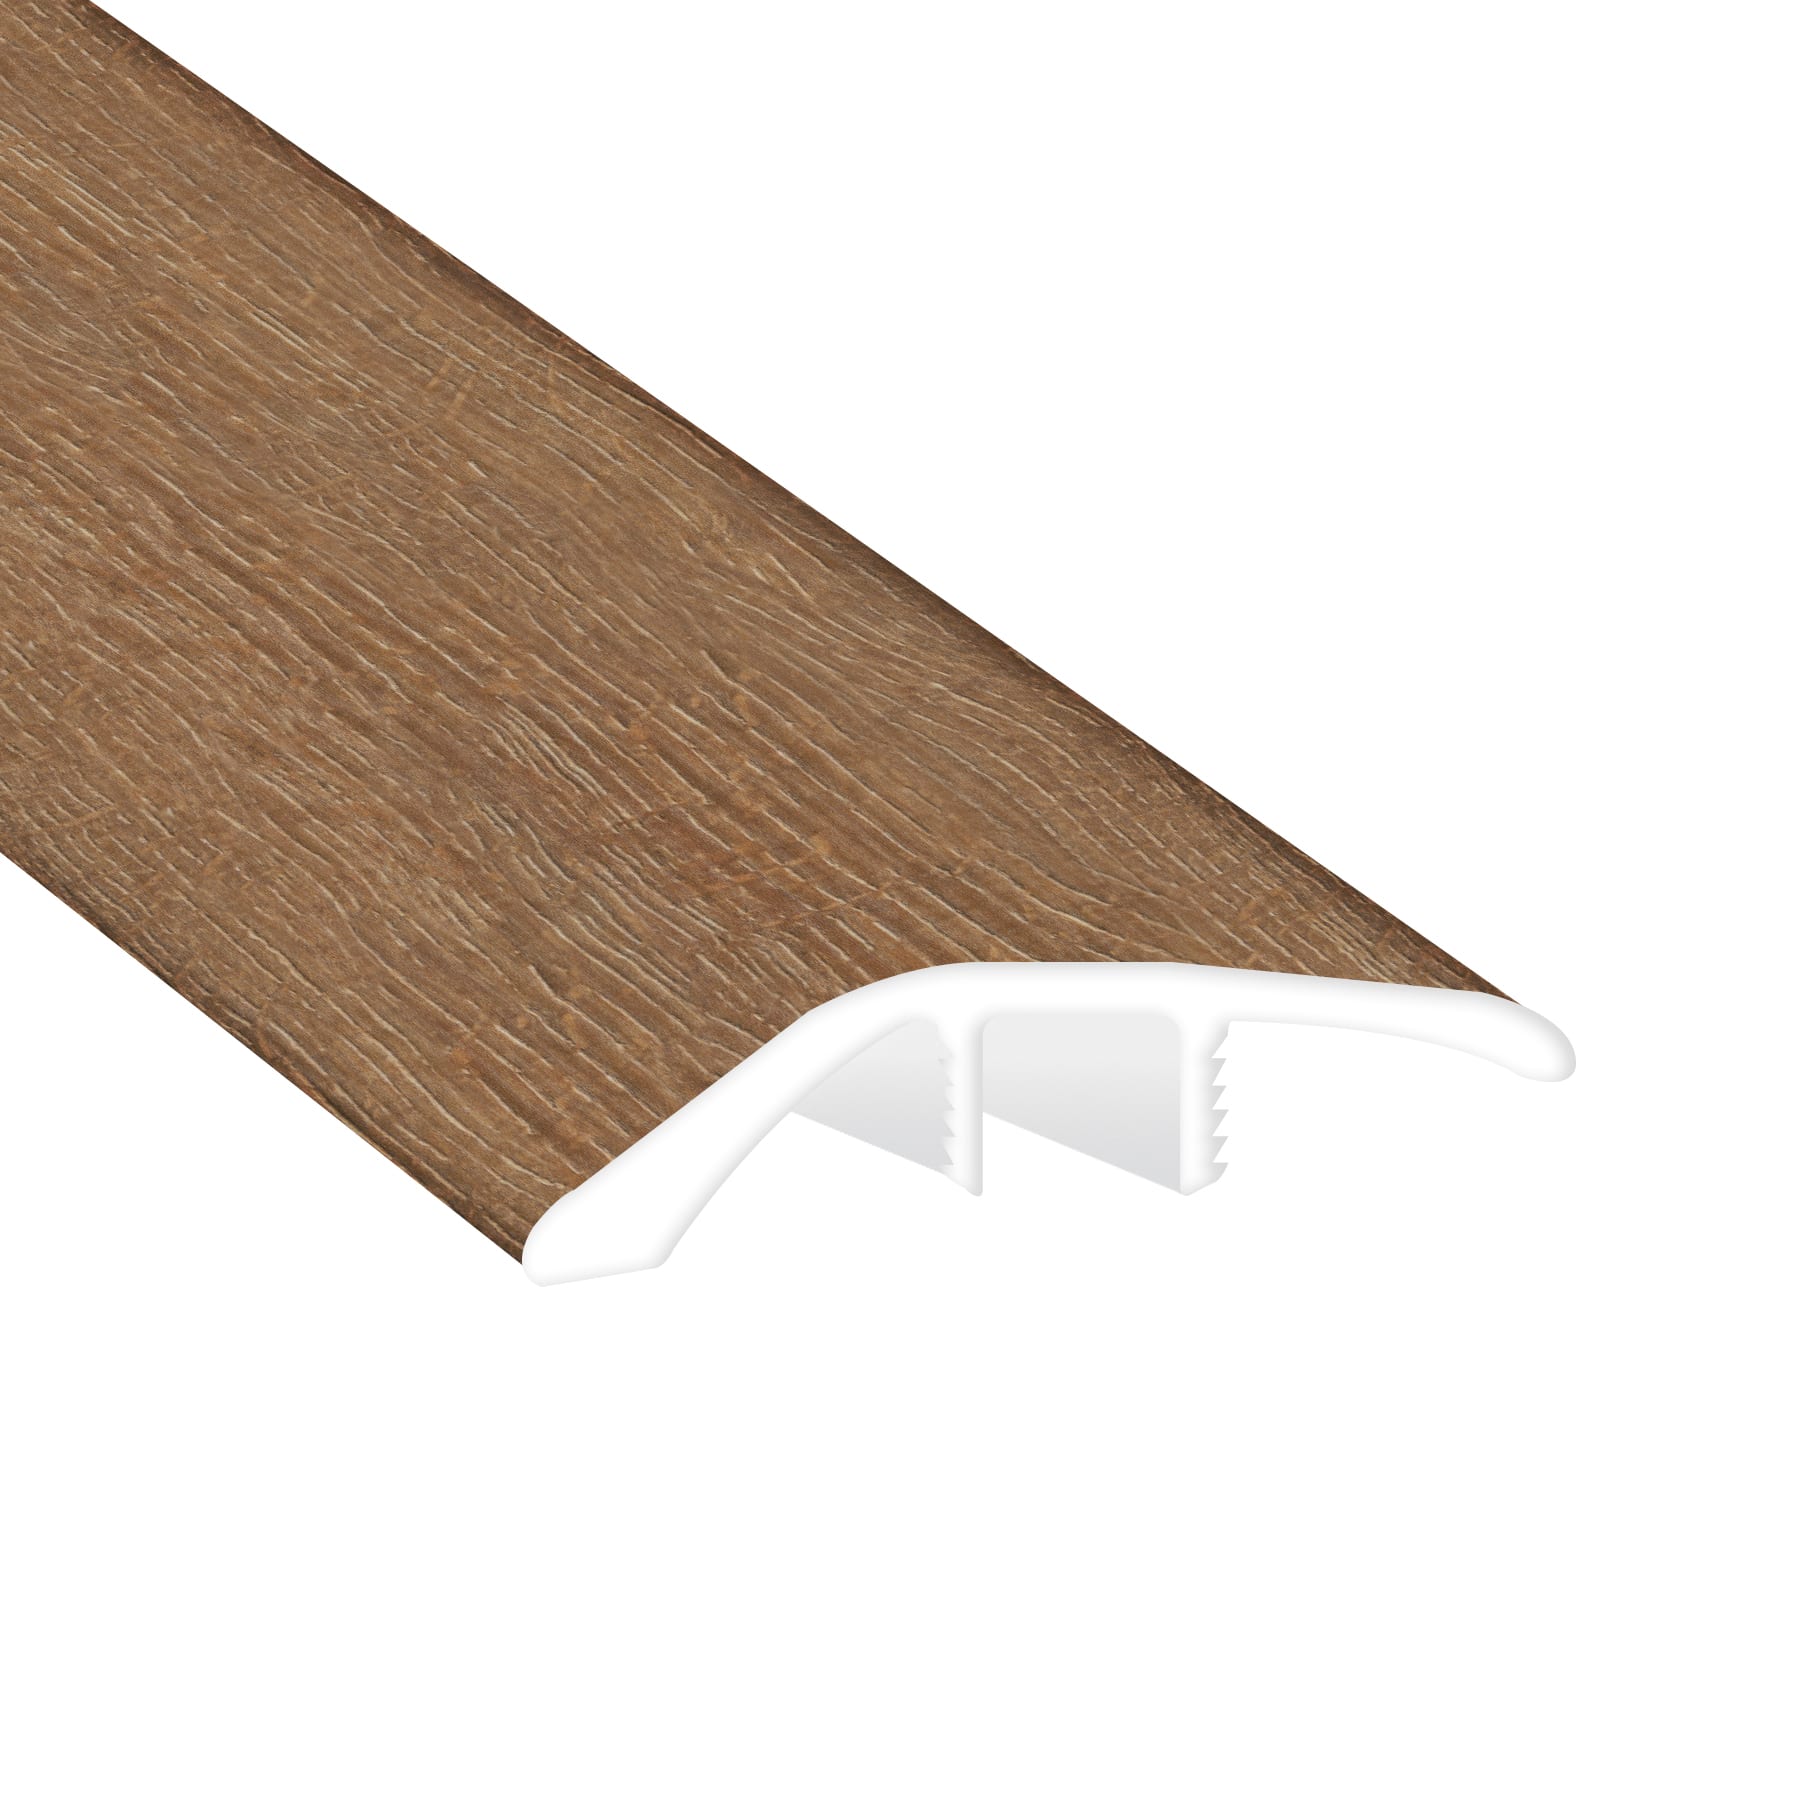 Sagrada Oak Waterproof 1.89 in. Wide x 7.5 ft. Length Low Profile Reducer